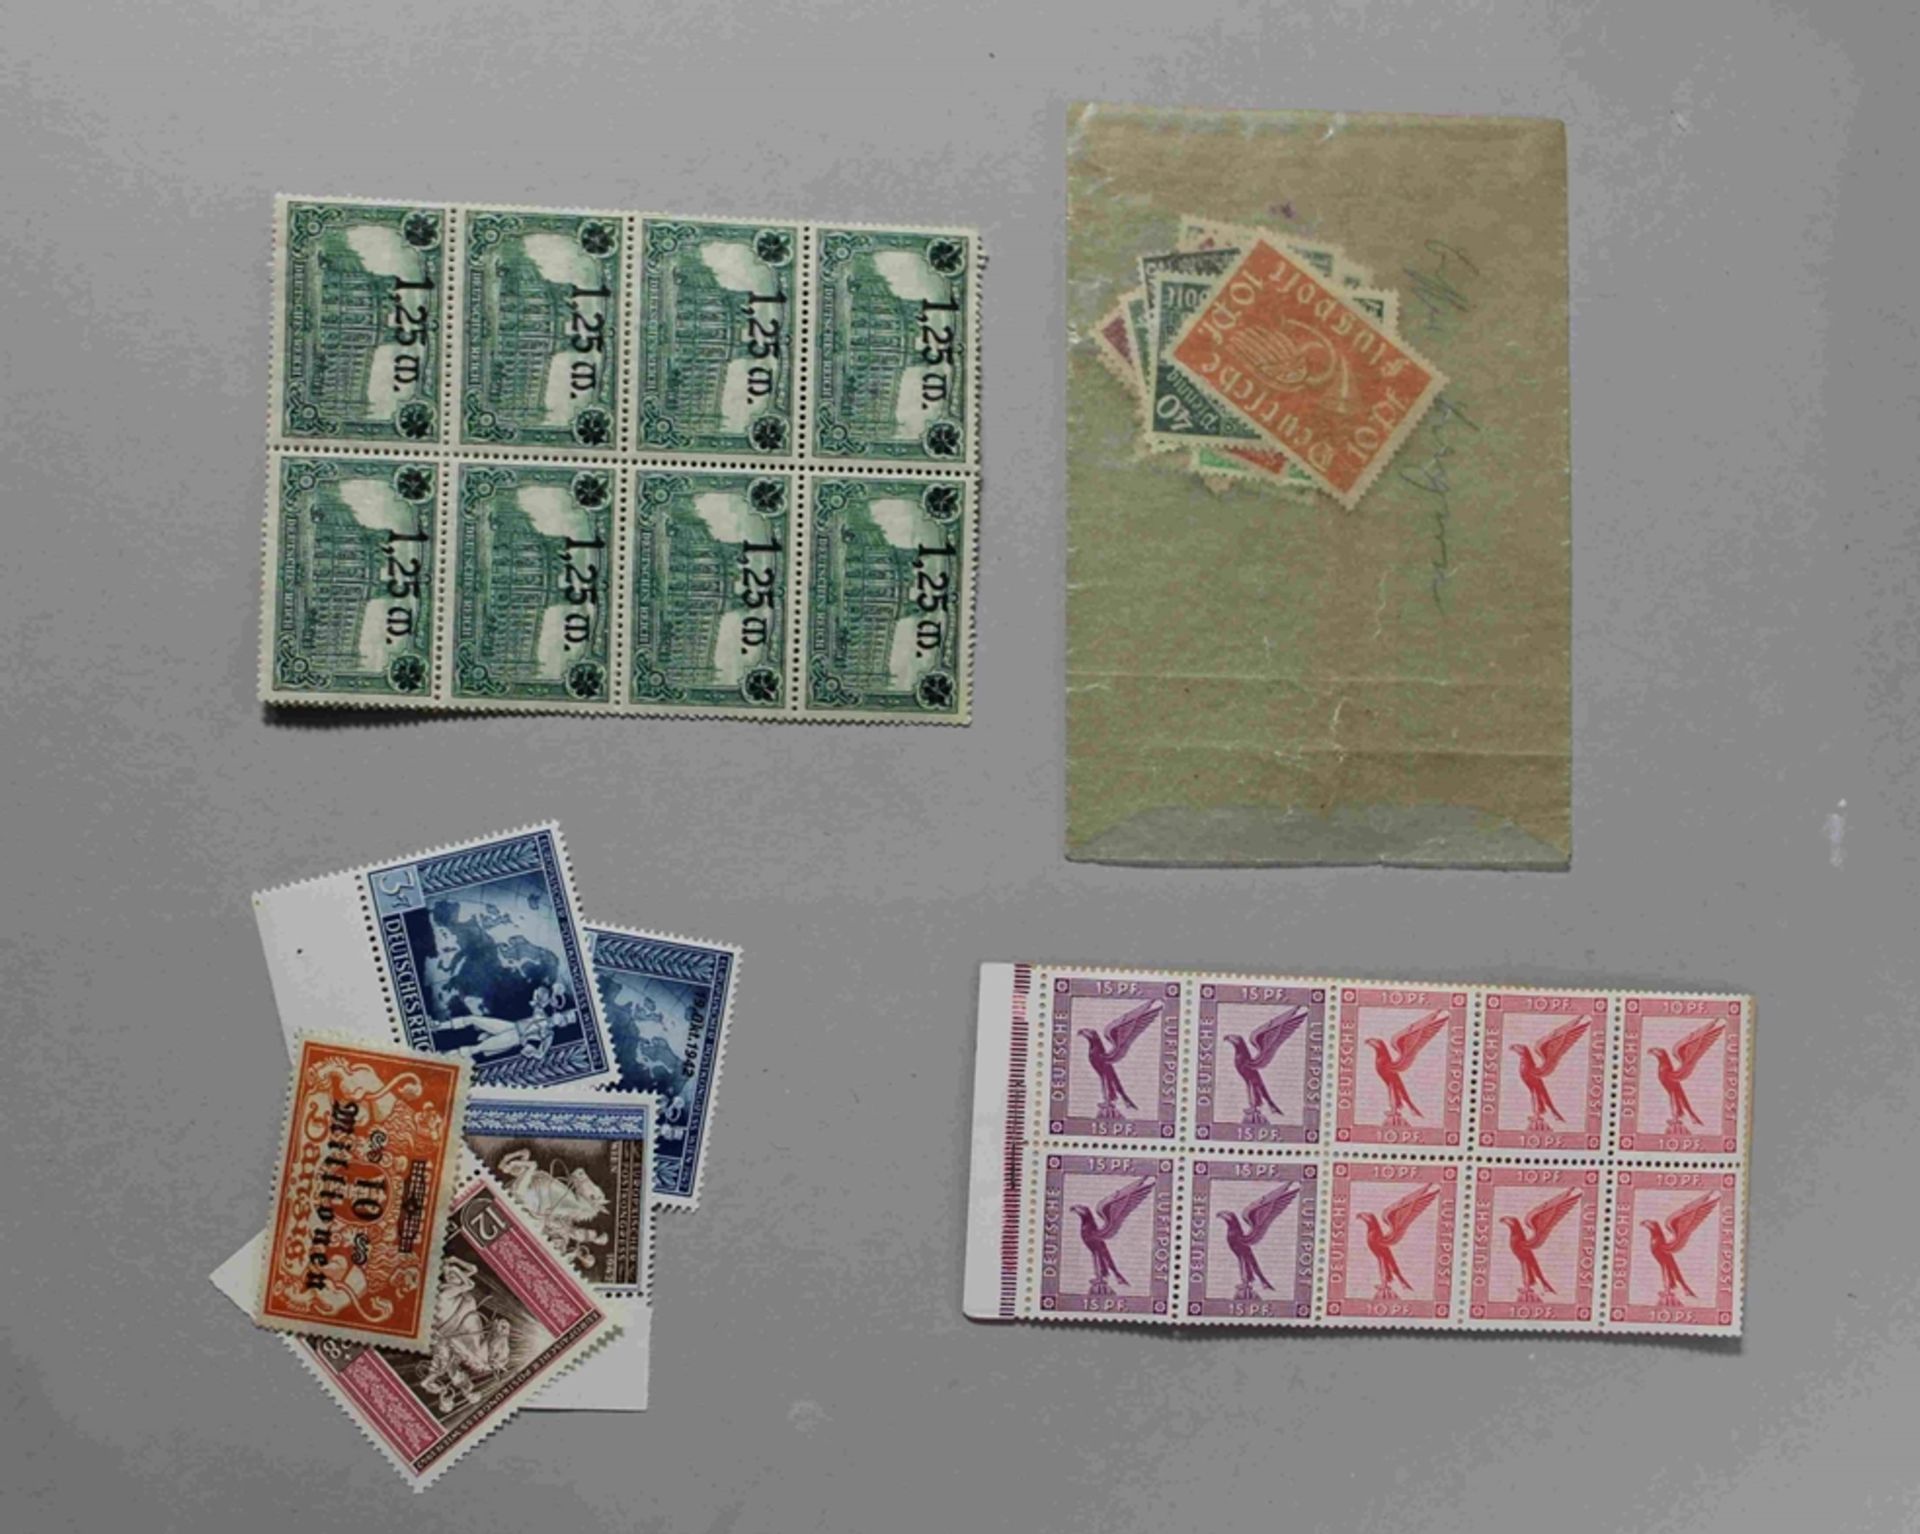 Großes Konvolut Briefmarken Deutsches Reich, diverse Motiven, Flugpost, Olympische Spiele 1936, Rol - Bild 3 aus 3